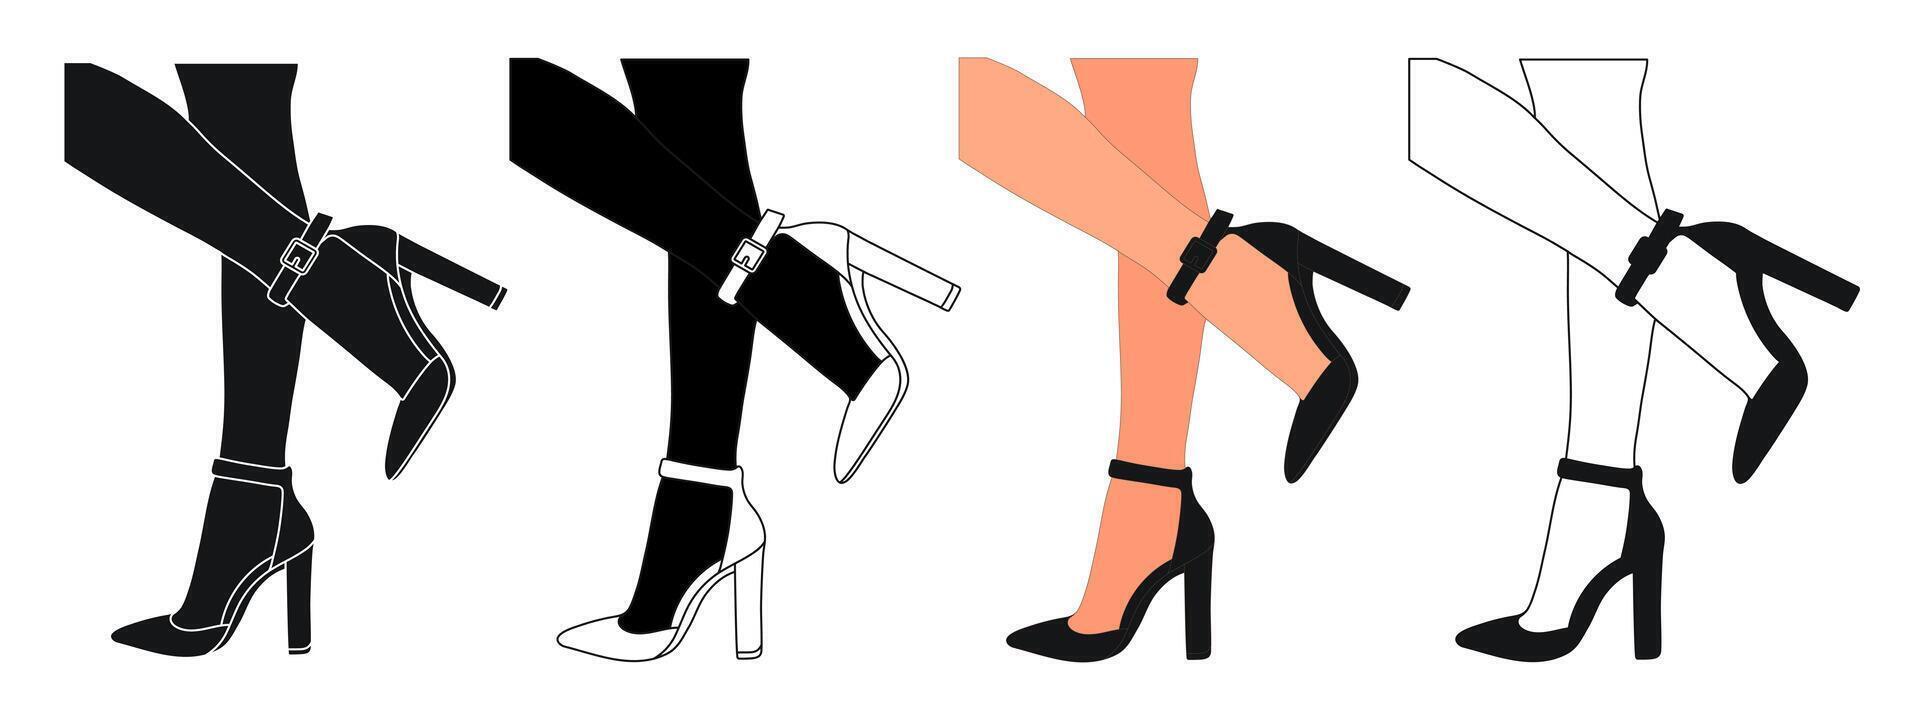 silhouet schets van vrouw poten in een houding. schoenen stiletto's, hoog hakken. wandelen, staan, rennen, springen, dans vector